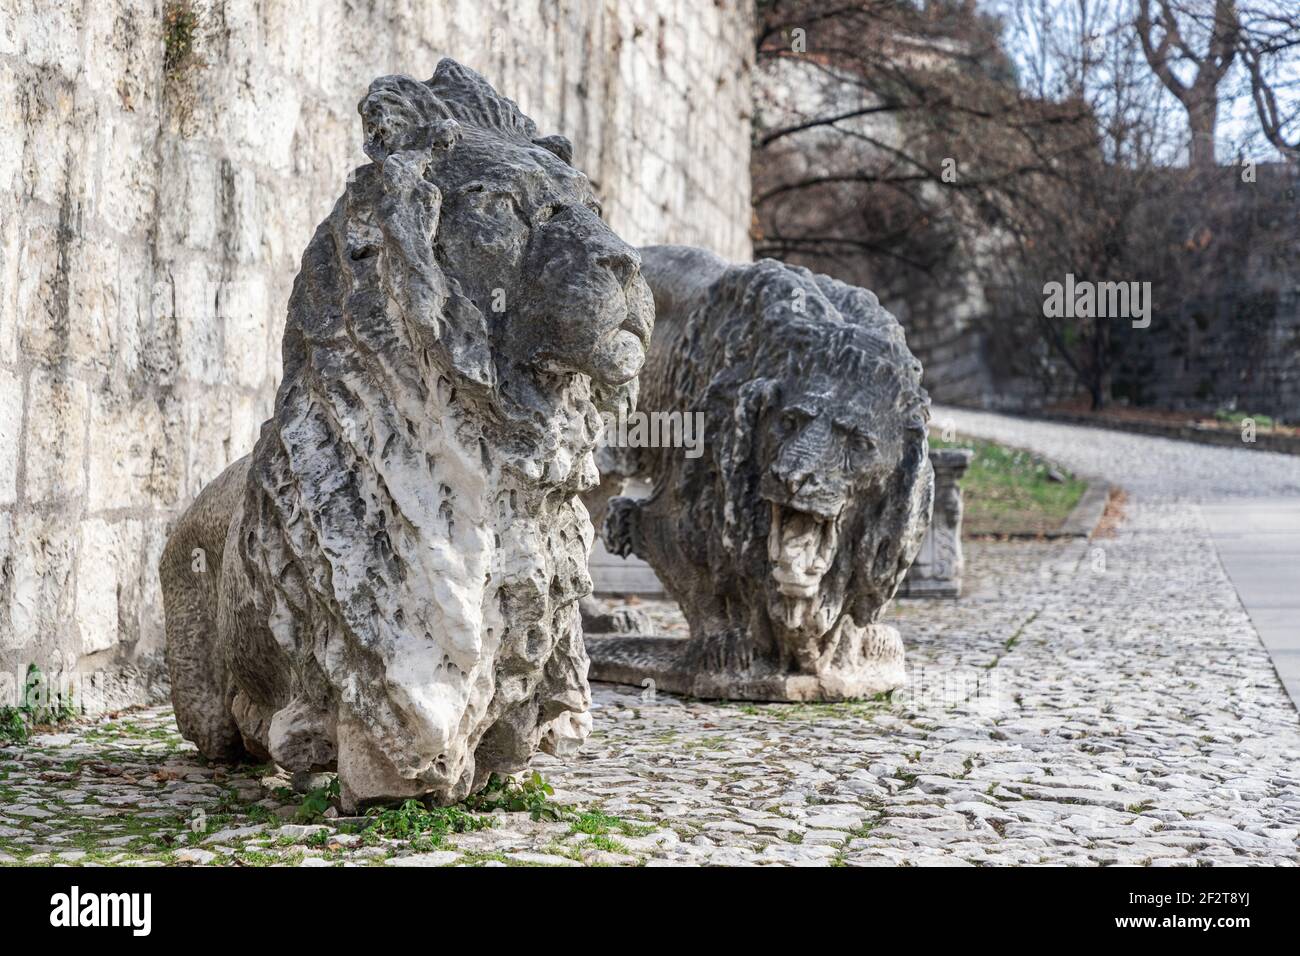 Im Park des Schlosses sind Skulpturen von Marmorlöwen, ein Symbol der Stadt Brescia, installiert. Lombardei, Italien. Stockfoto